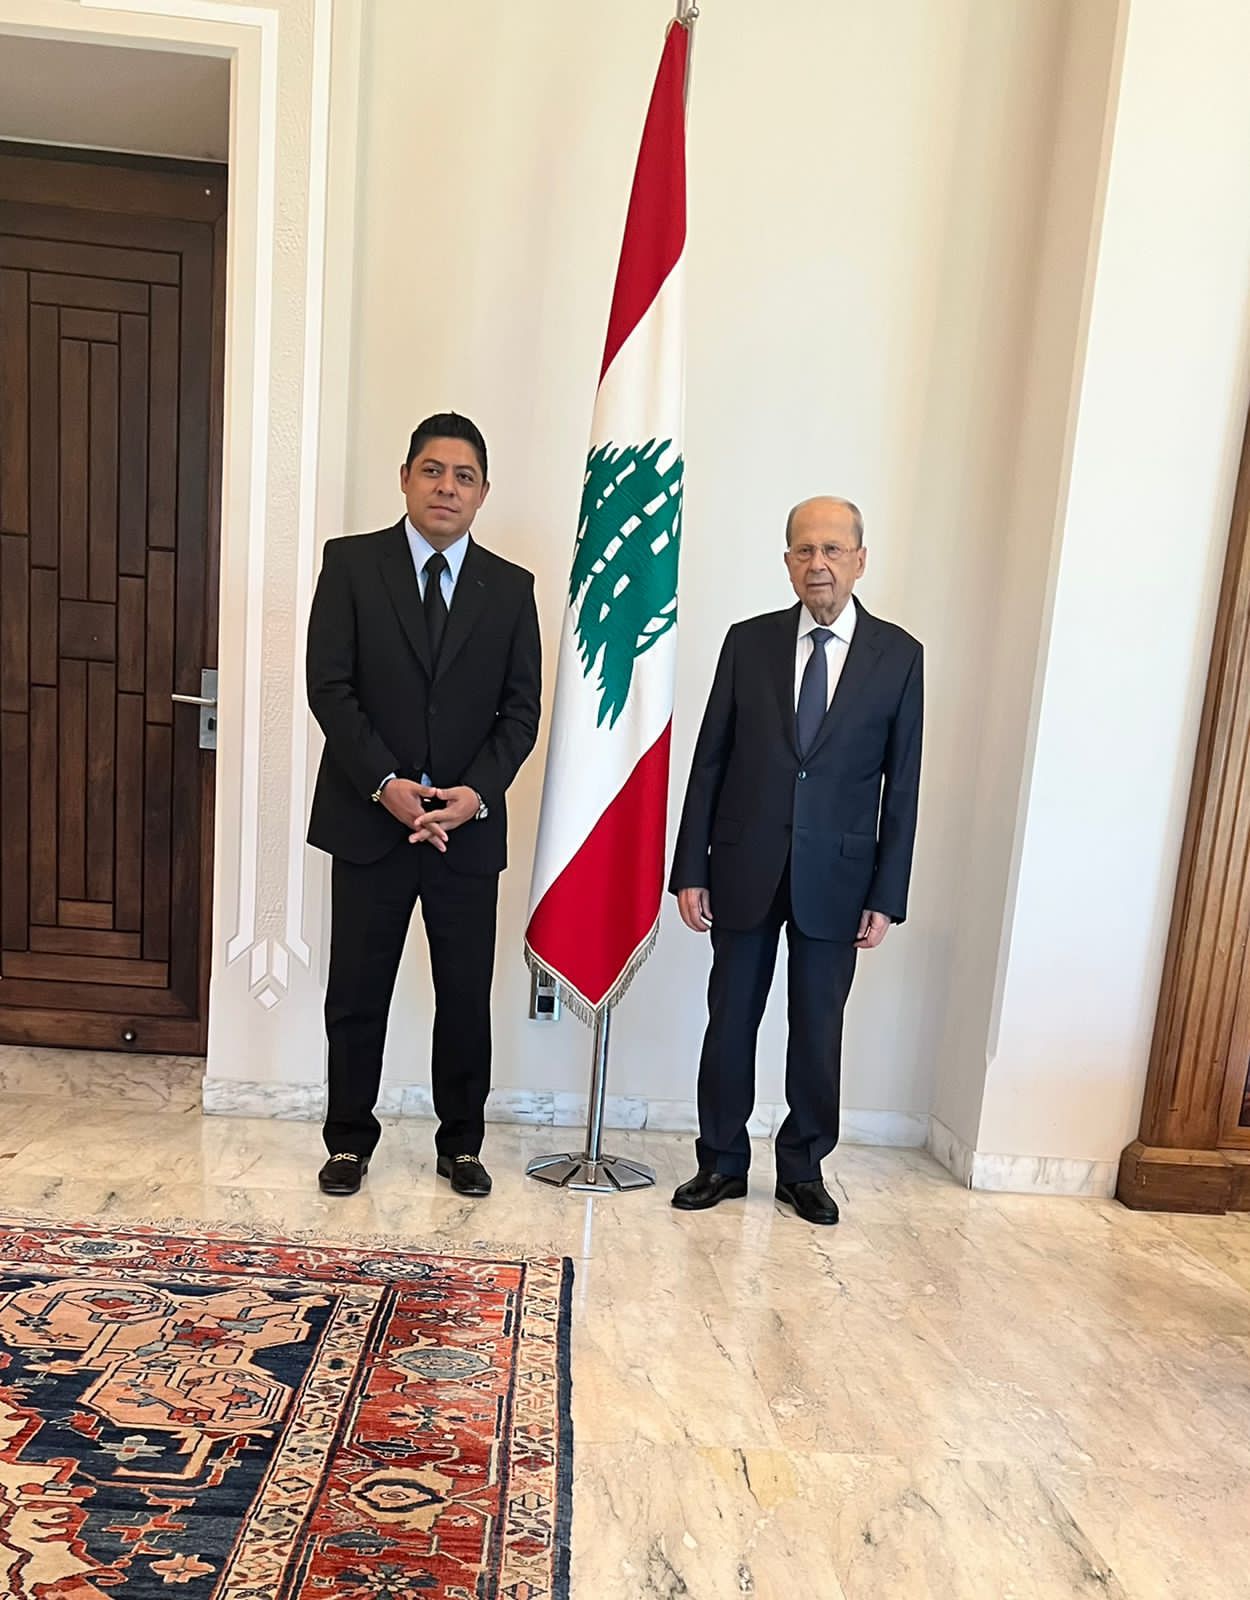 El Gobernador de San Luis Potosí, Ricardo Gallardo Cardona, se reunió con el Presidente de Líbano, General Michael Aoun